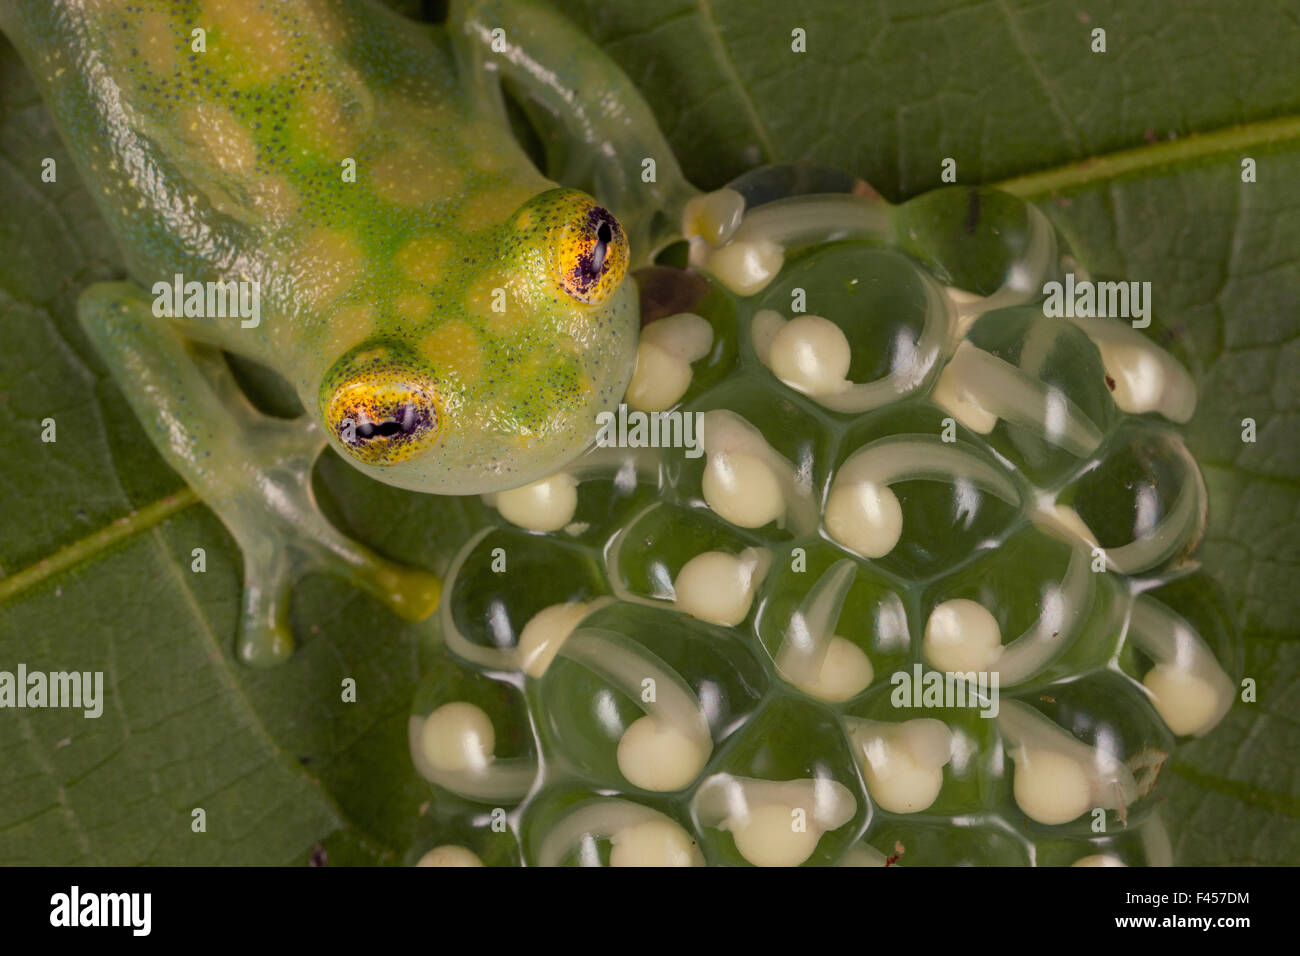 Netzartige Glas Frosch (Hyalinobatrachium Valerioi) Männchen bewacht Gelege auf Blatt, Costa Rica. Stockfoto